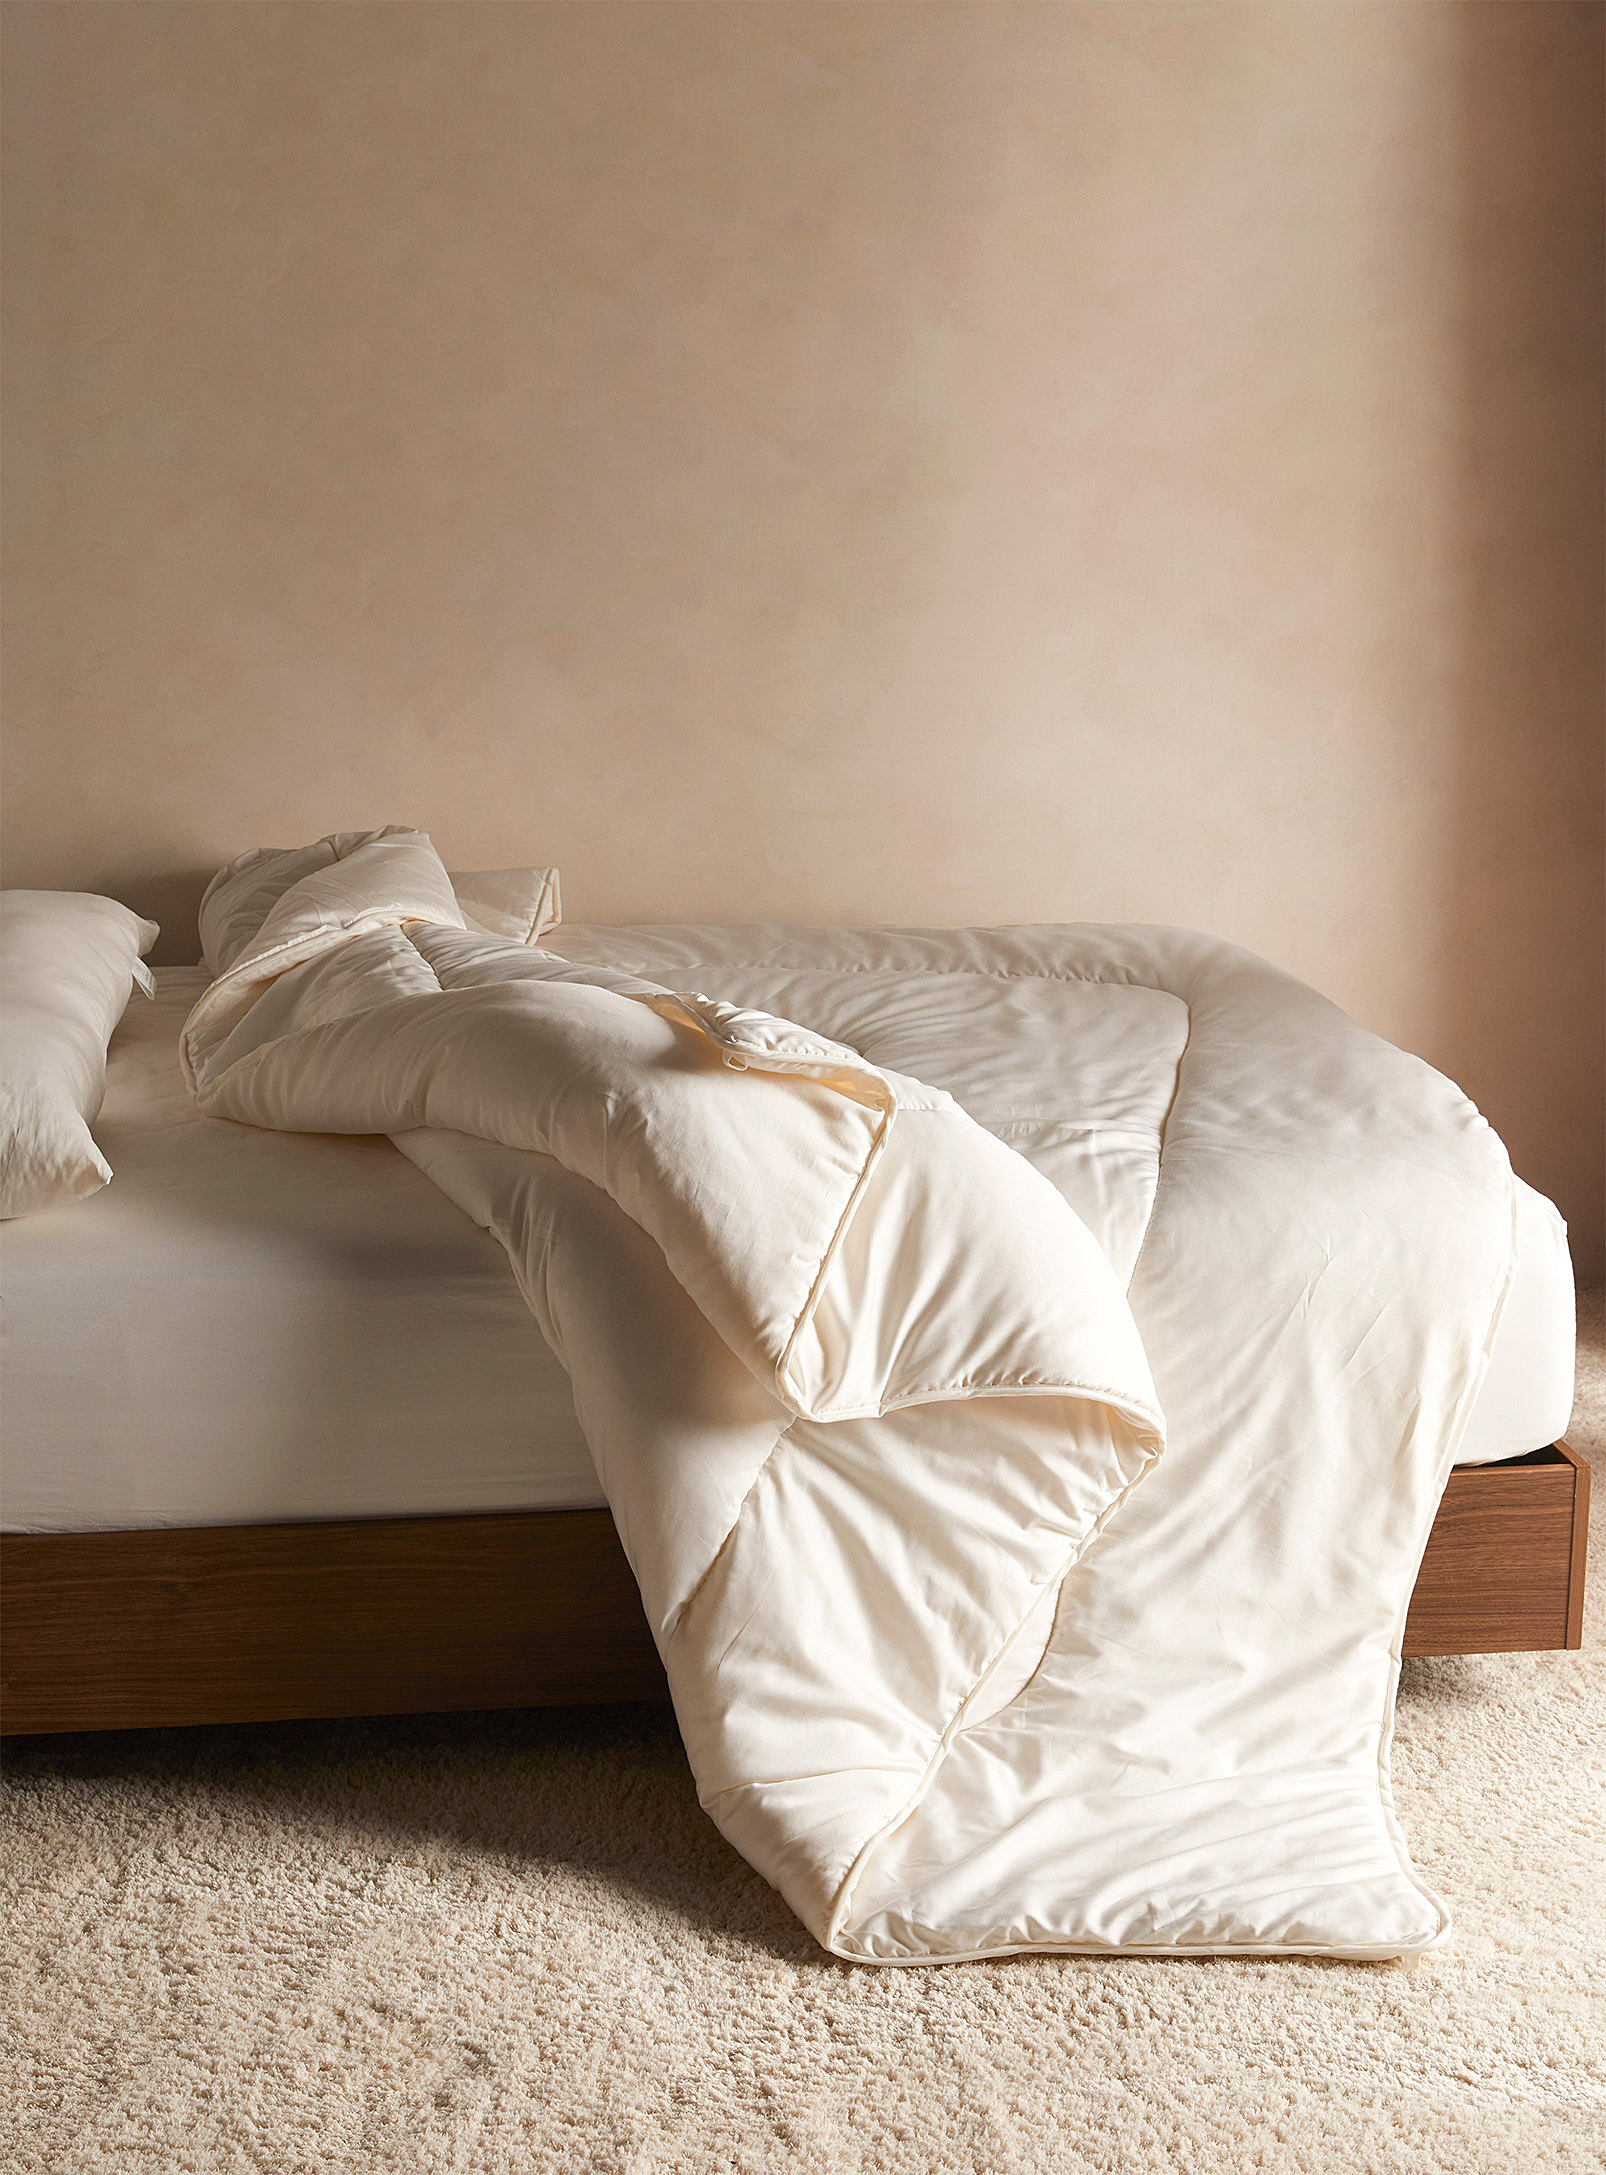 Snugsleep Heritage Organic Wool Duvet In White